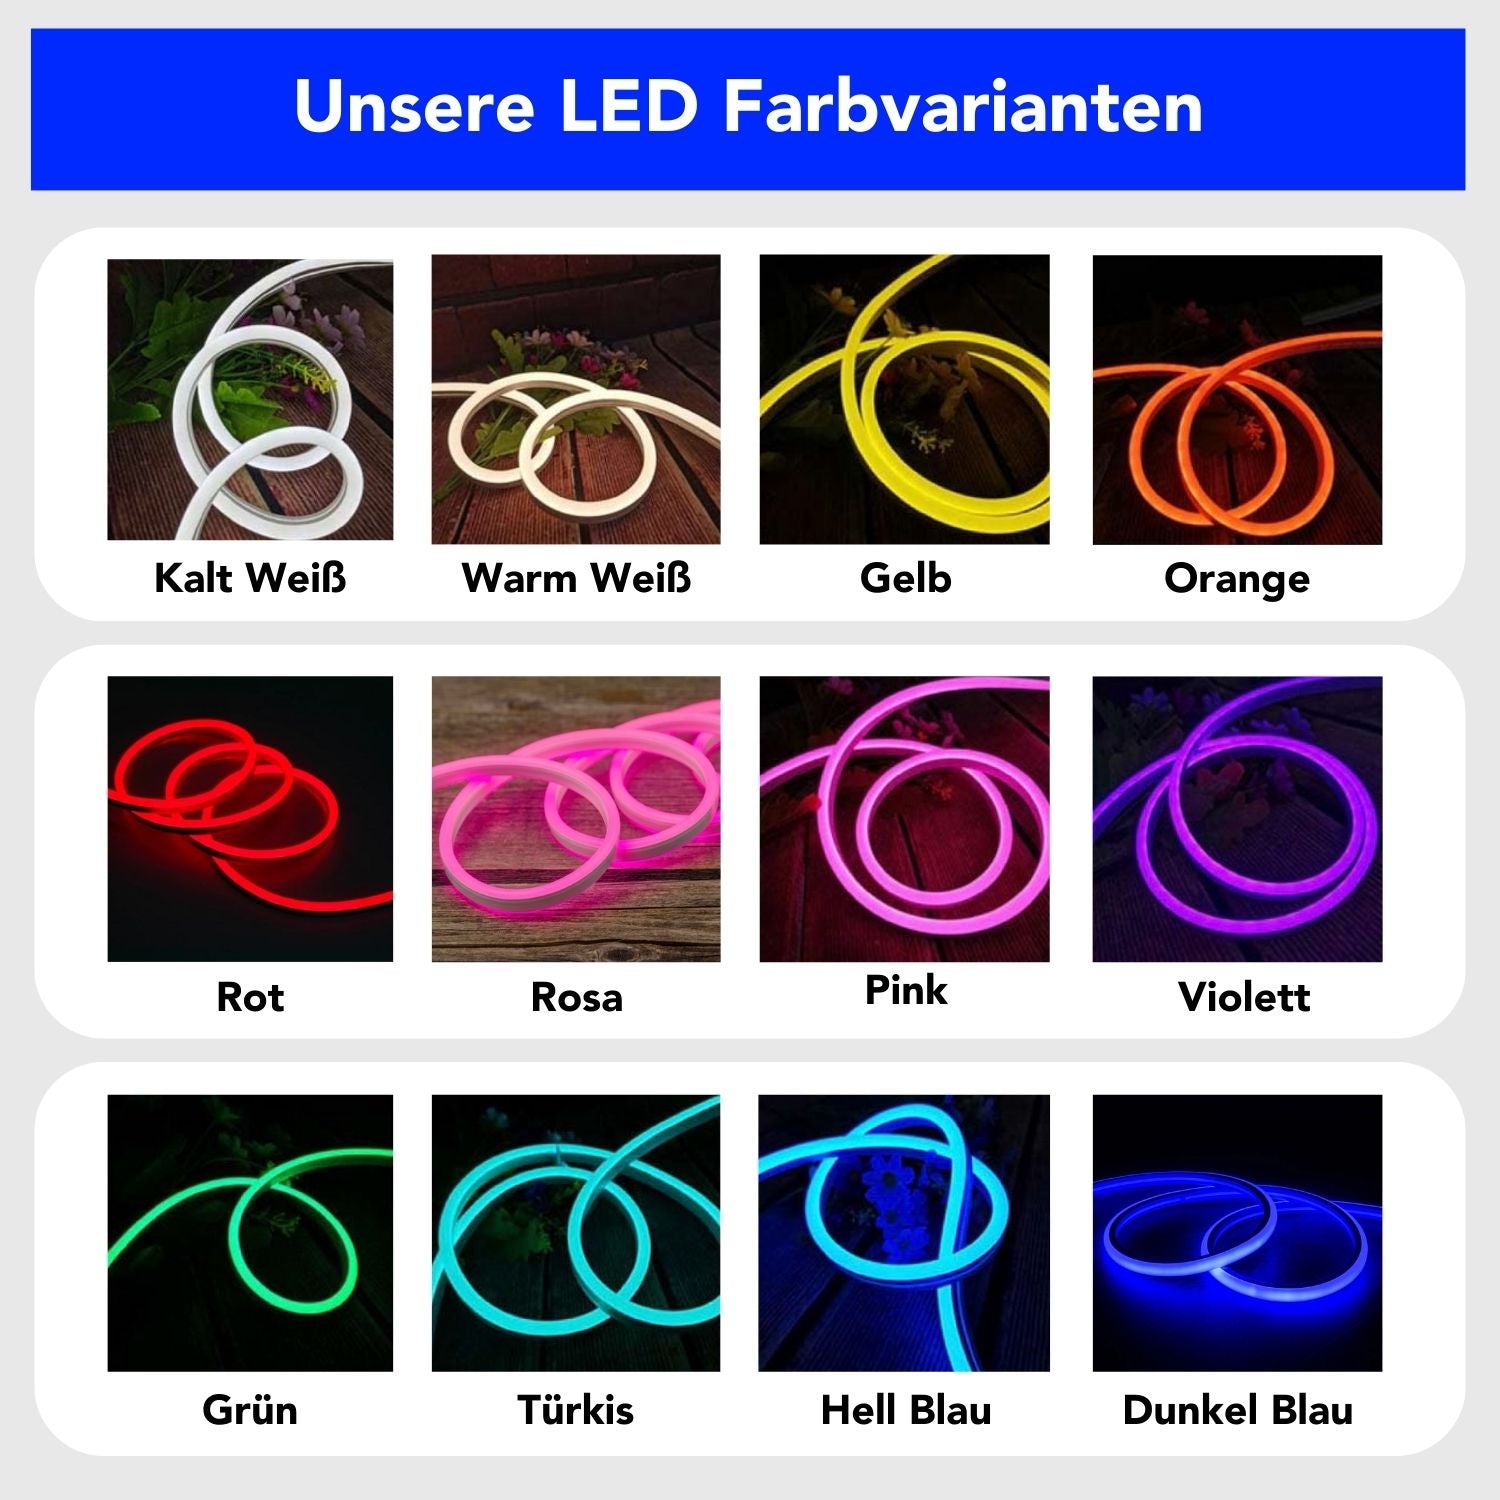 "Fahrrad - Travel" LED Neonschild